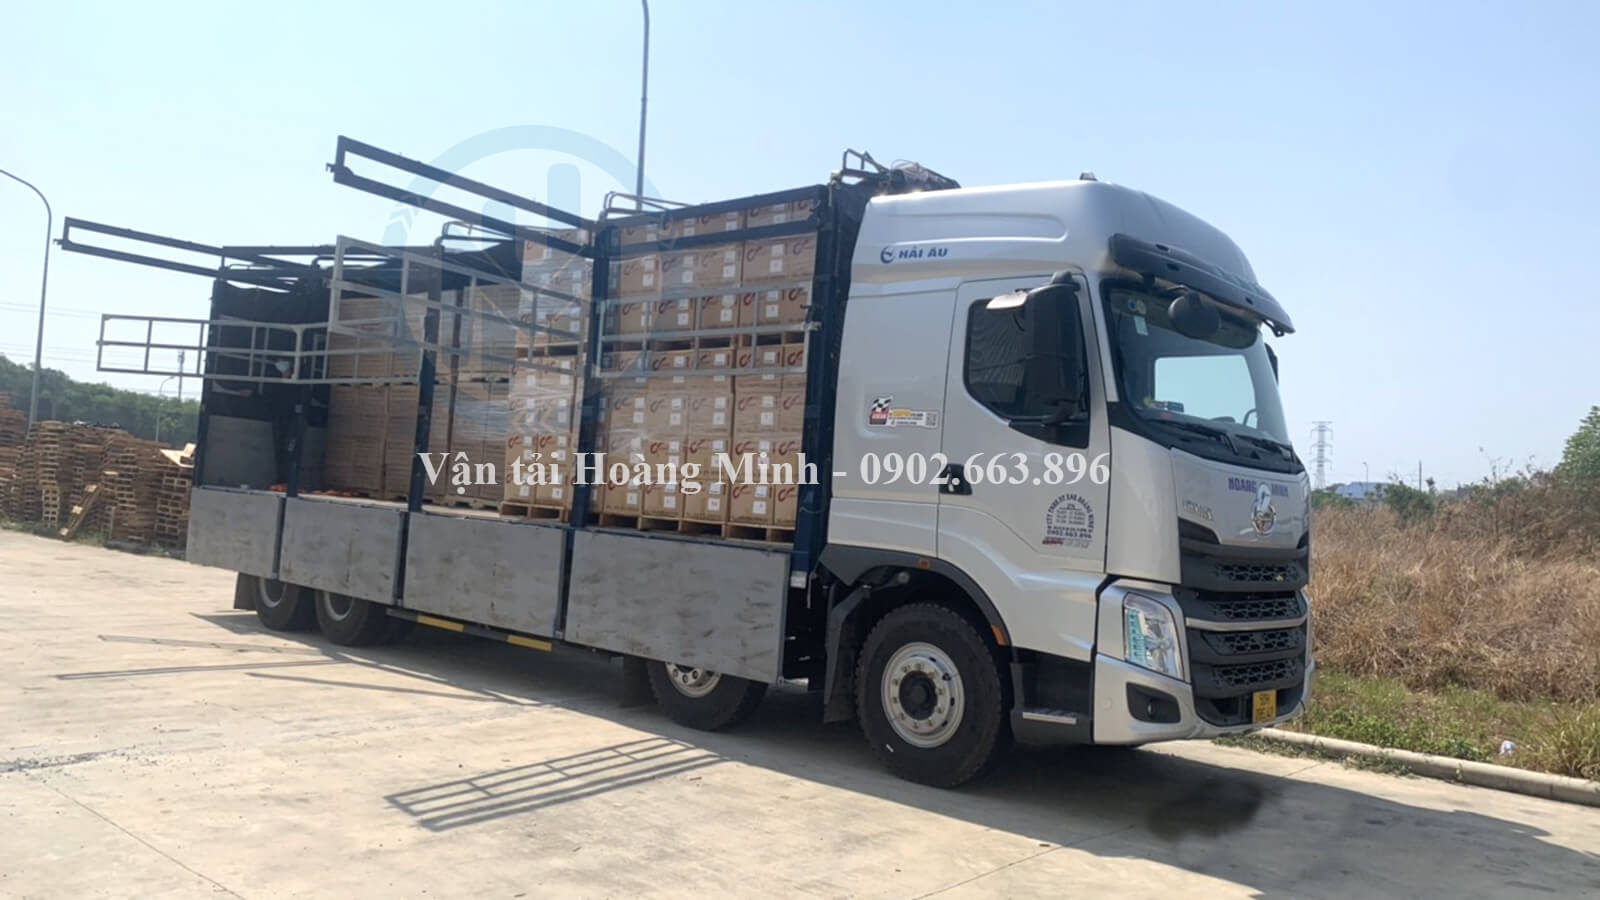 Lợi ích Vận tải Hoàng Minh mang lại khi bạn sử dụng dịch vụ cho thuê xe tải Huyện Long Điền